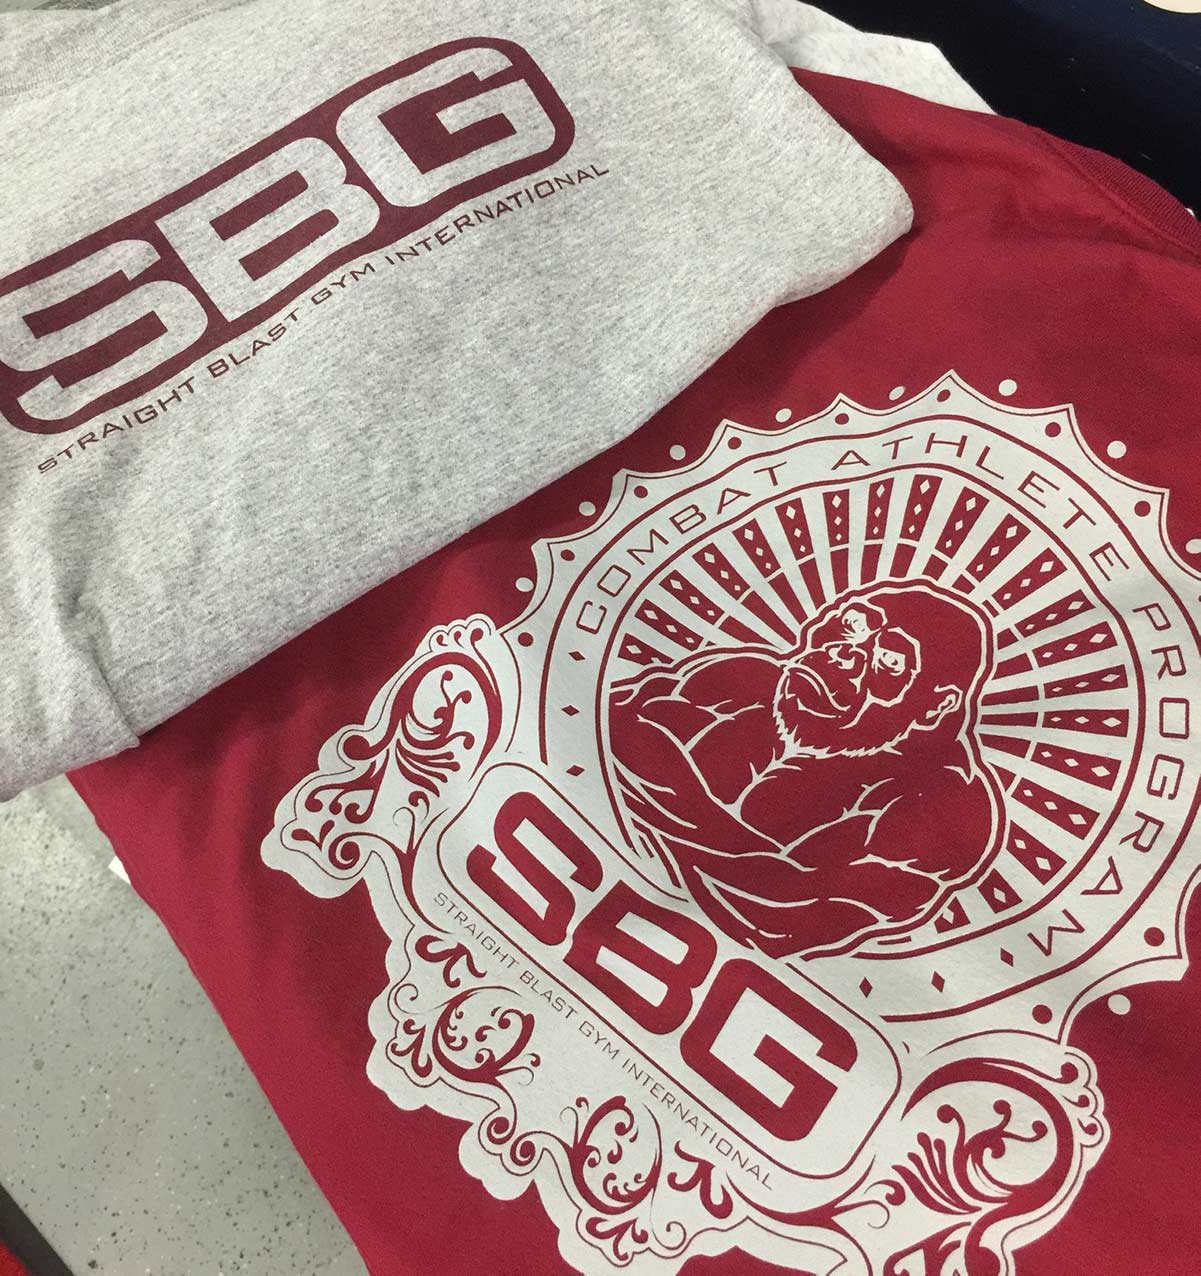 Montana SBG gym shirts